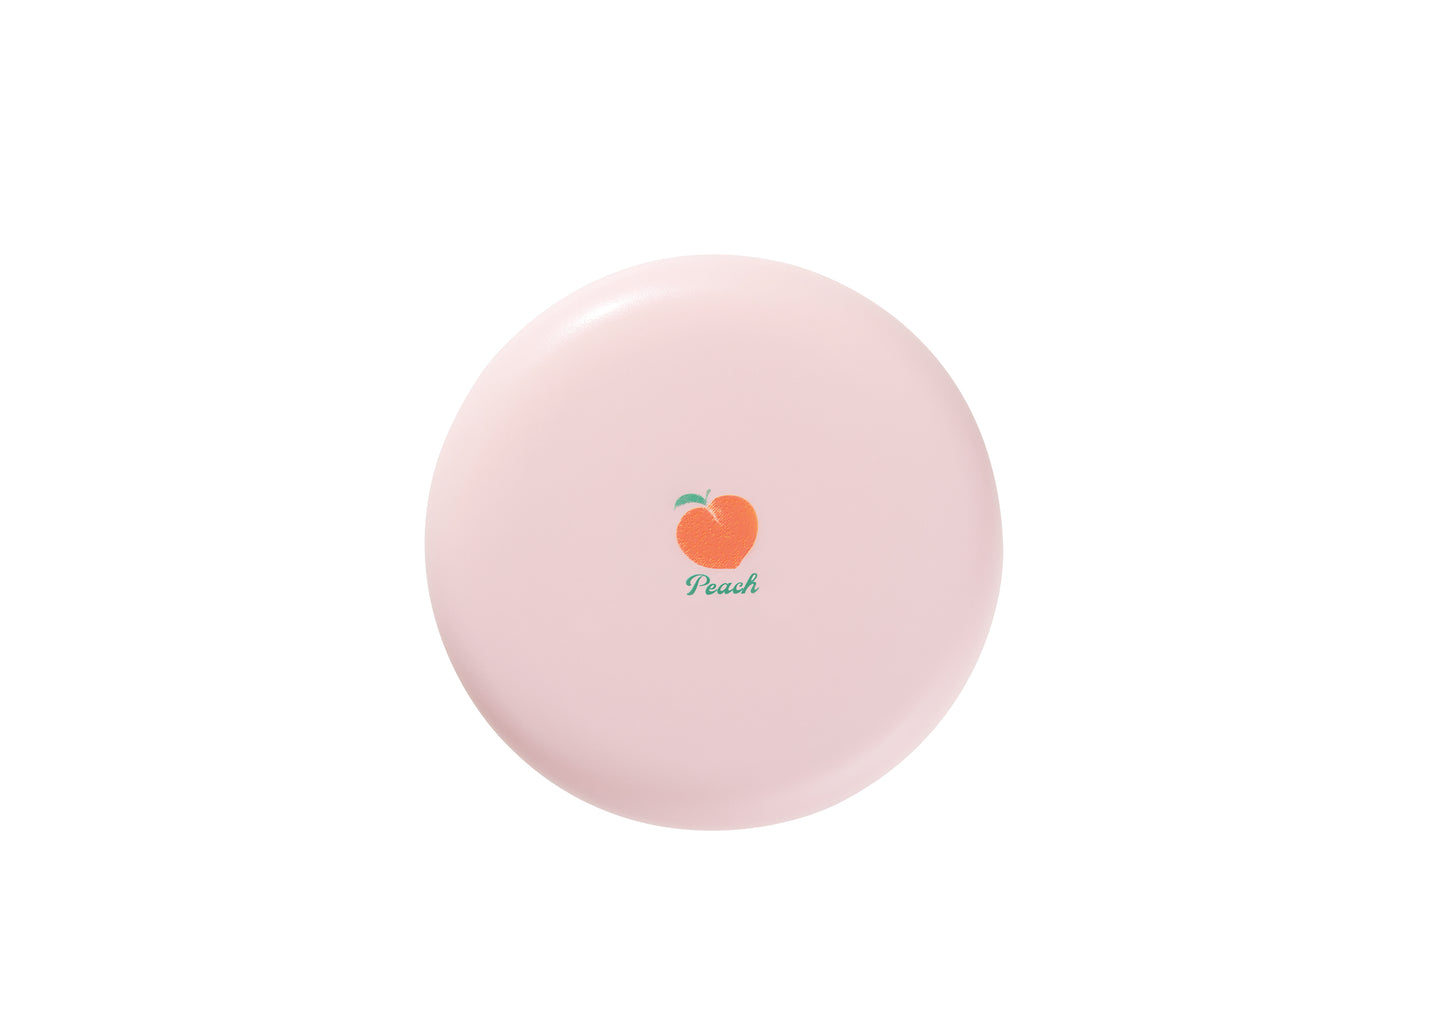 SF3791 - Peach Cotton Pore Blur Pact